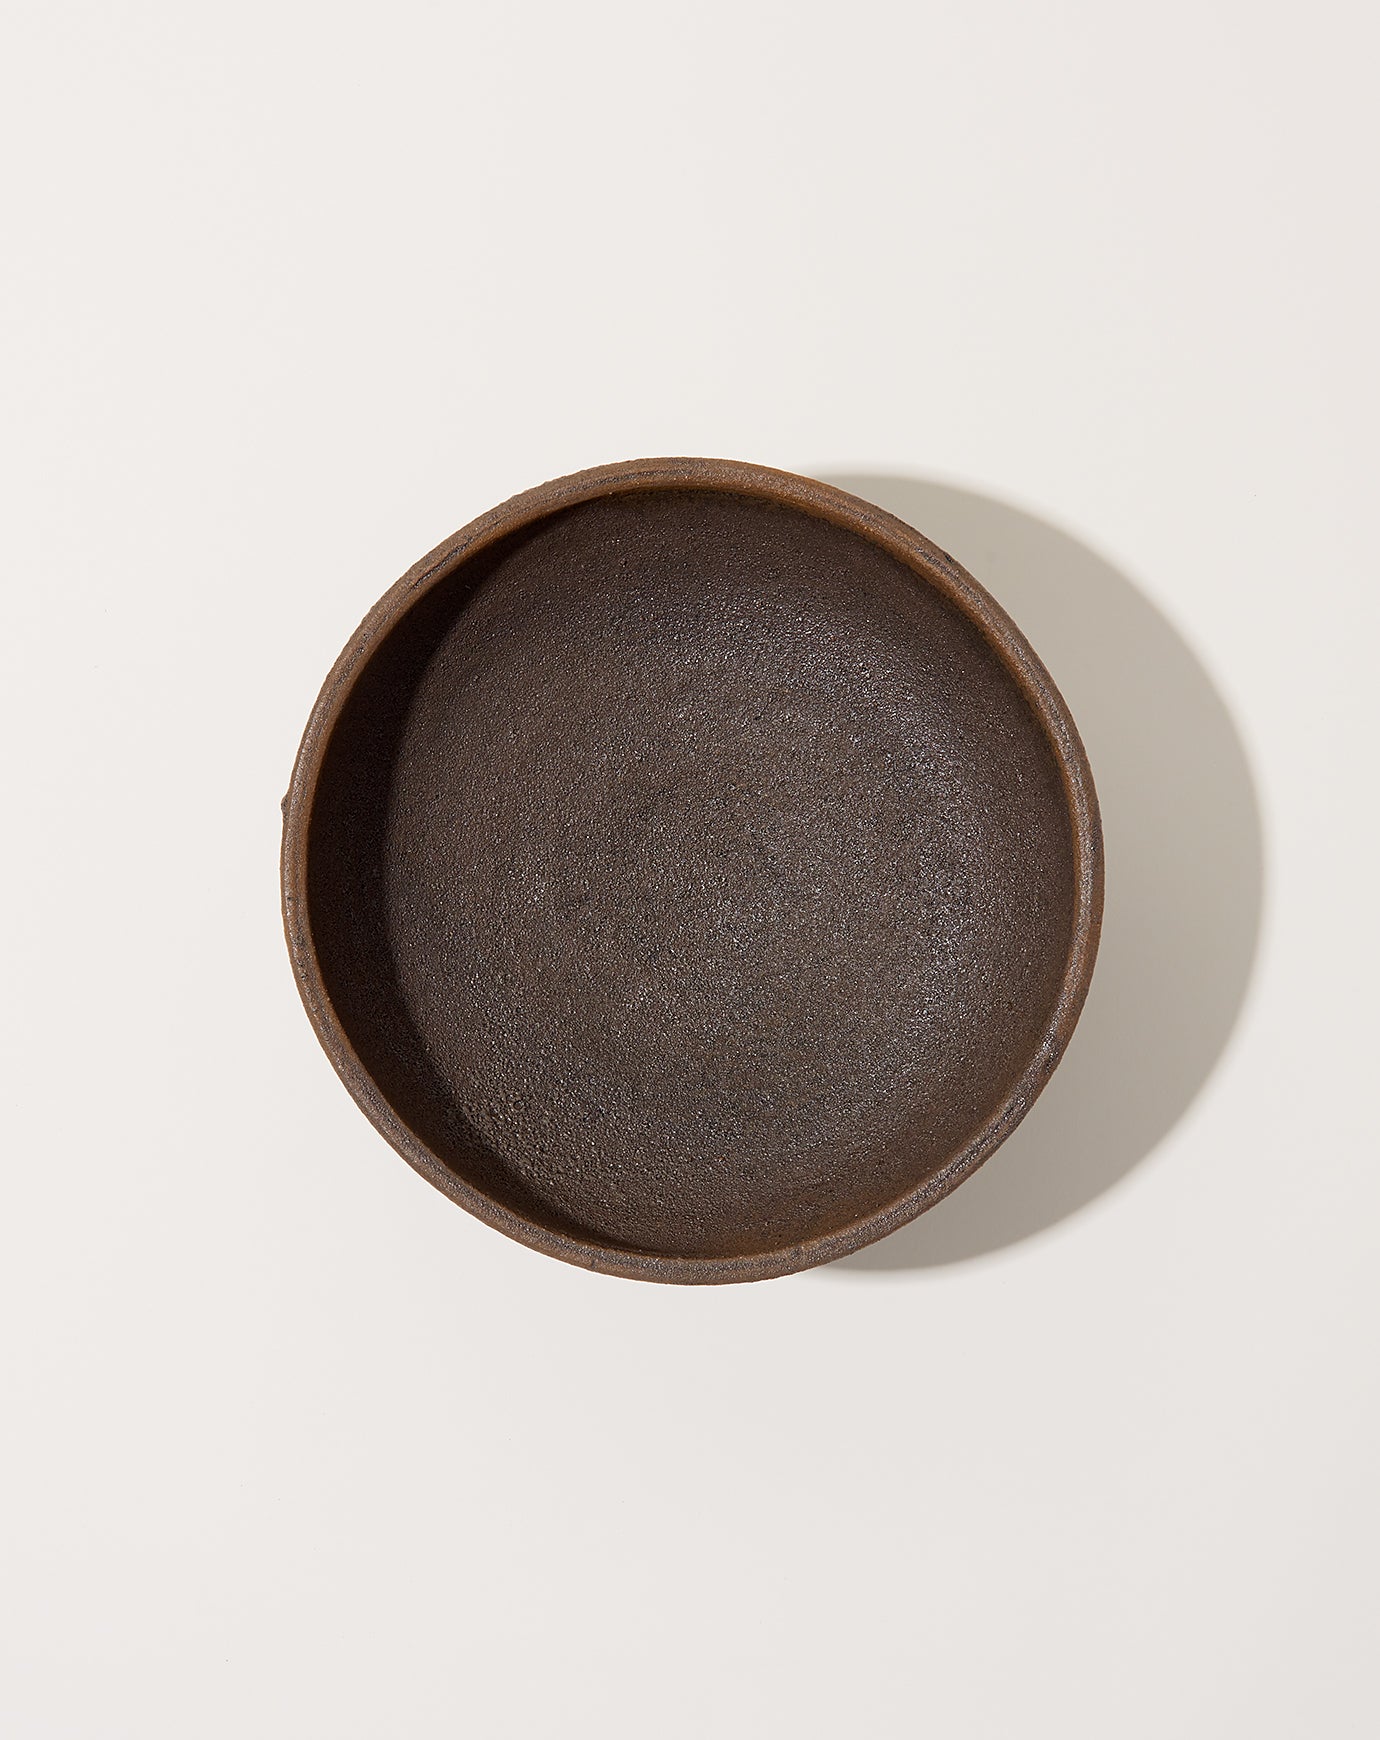 Nur Ceramics Large Ritual Bowl in Volcanic Black